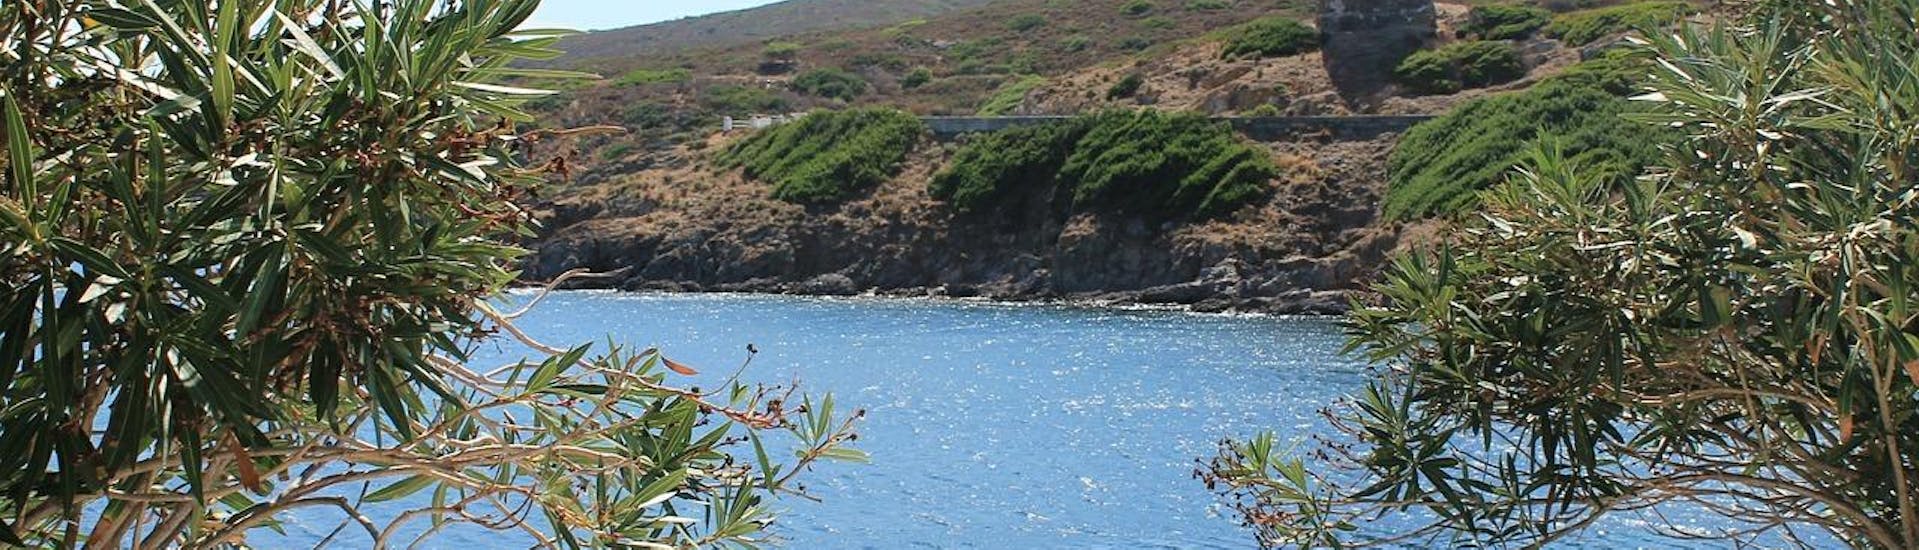 Vue d'une baie et des terres de l'île d'Asinara en Sardaigne.